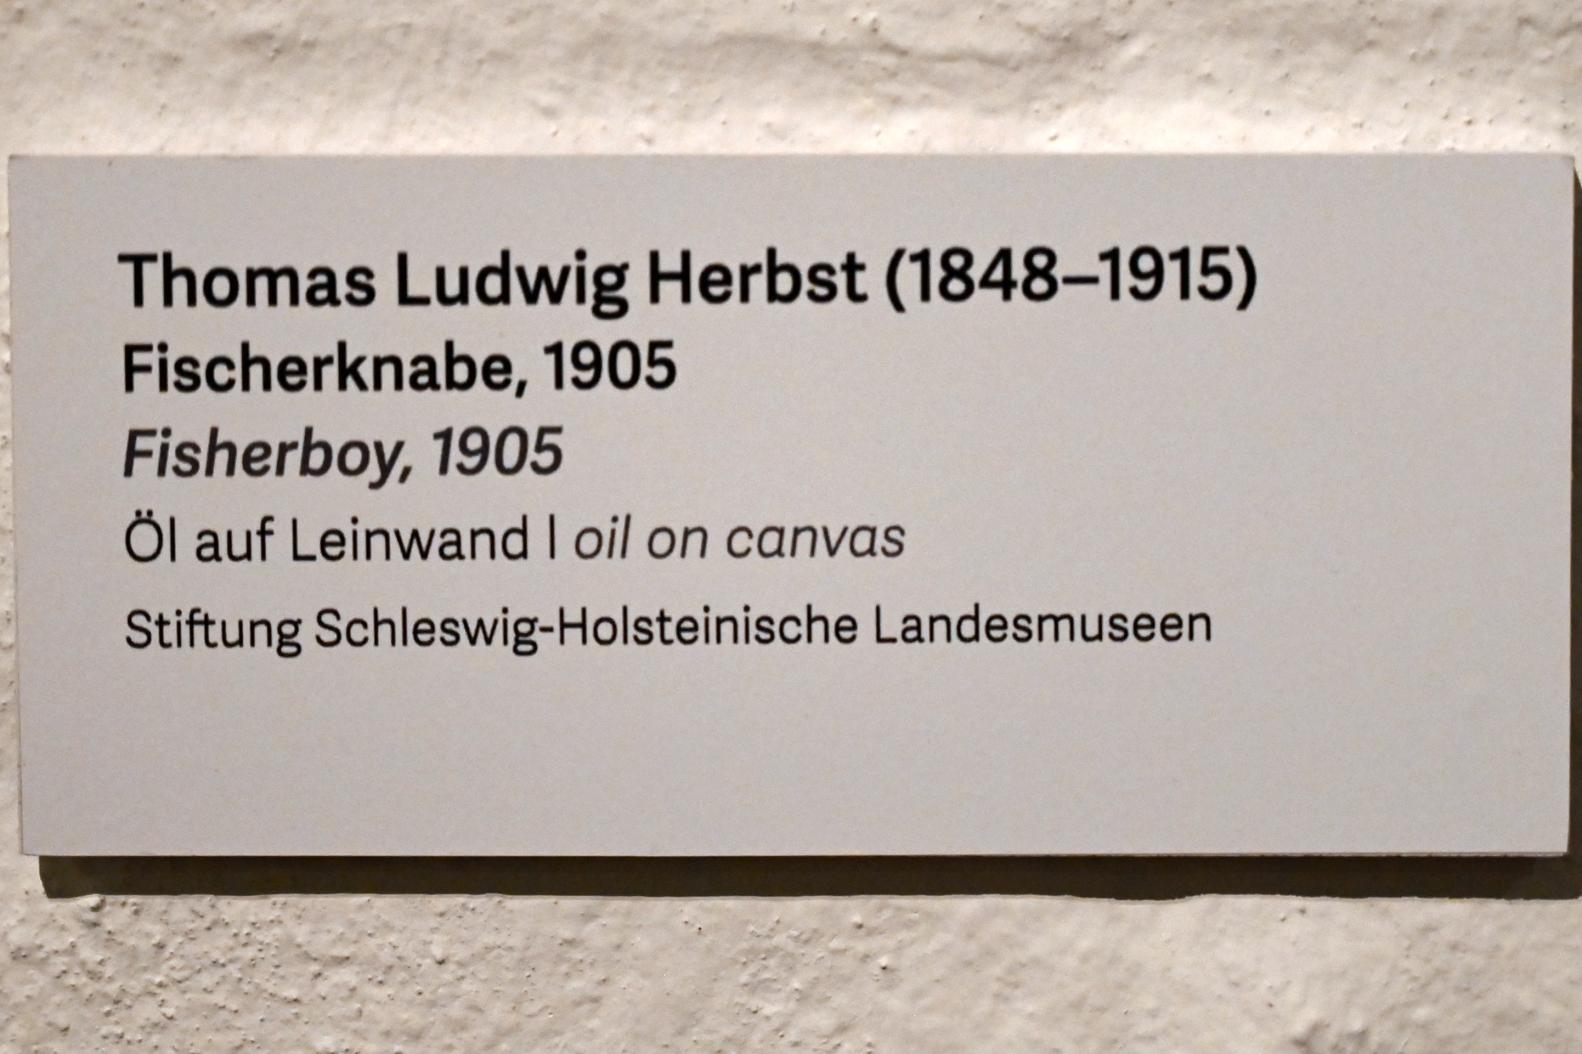 Thomas Ludwig Herbst (1905), Fischerknabe, Schleswig, Landesmuseum für Kunst und Kulturgeschichte, Kunst im 20. Jh., 1905, Bild 2/2